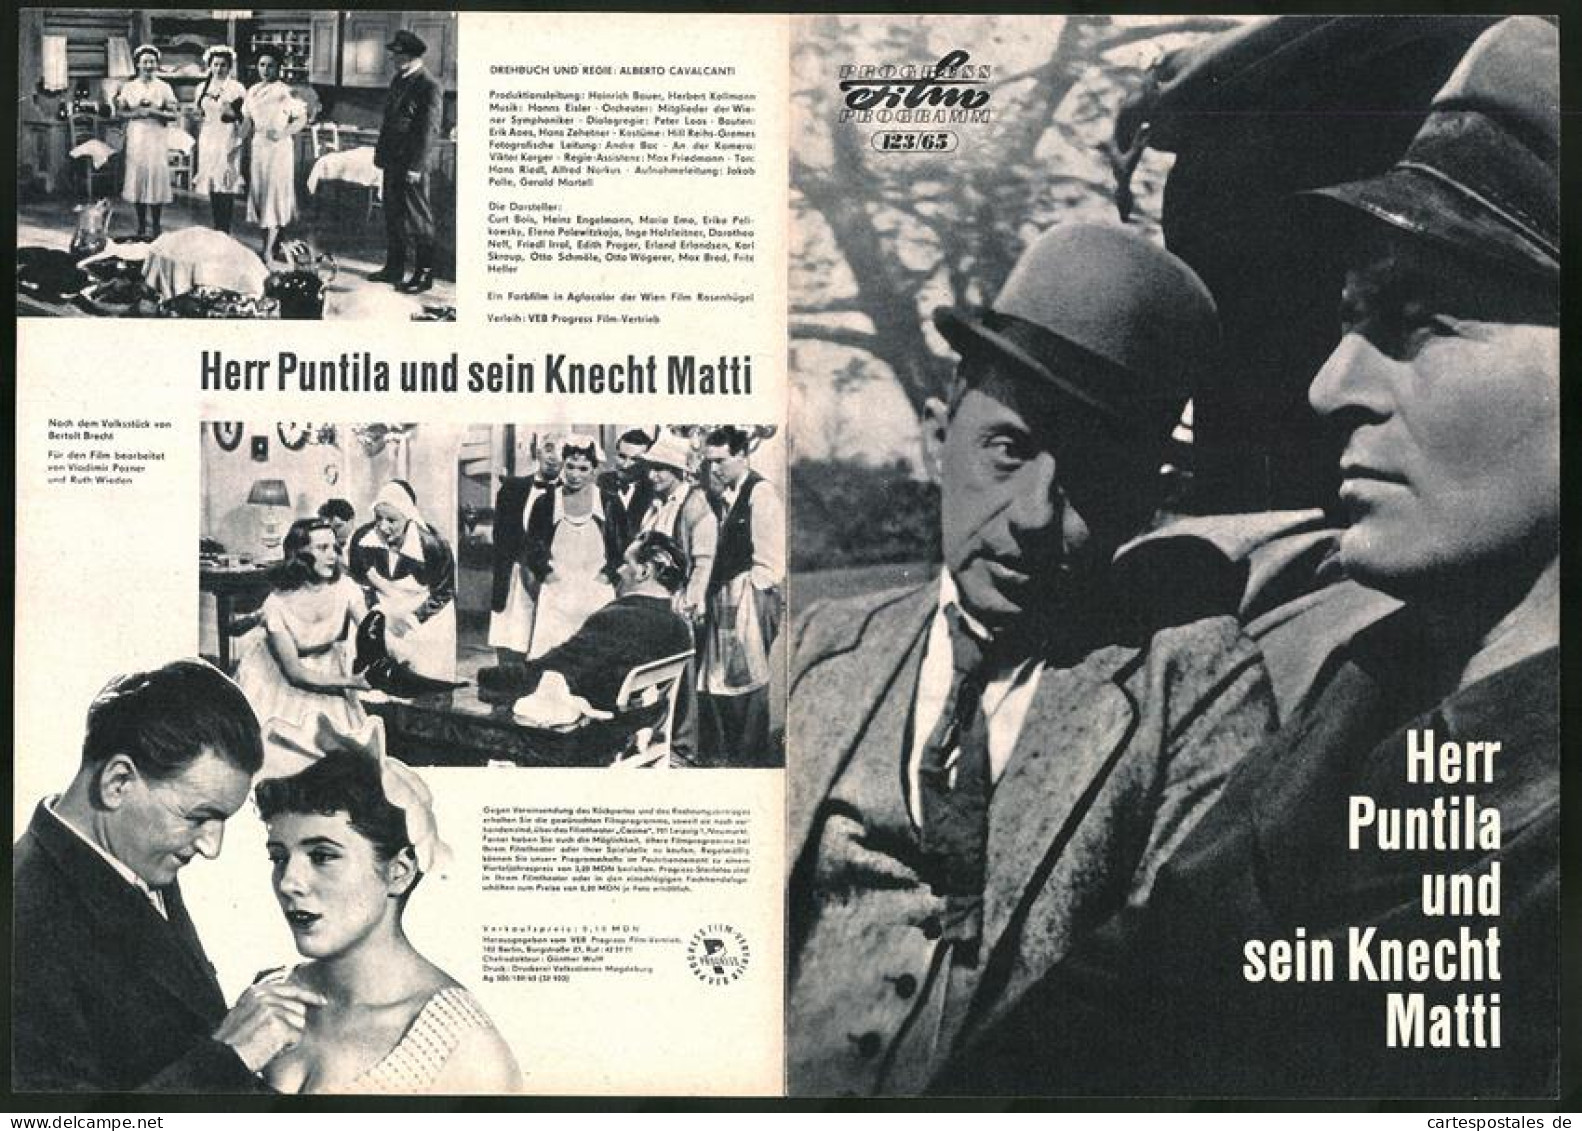 Filmprogramm PFP Nr. 123 /65, Herr Puntila Und Sein Knecht Matti, Curt Bois, Heinz Engelmann, Regie: Alberto Cavalcanti  - Zeitschriften